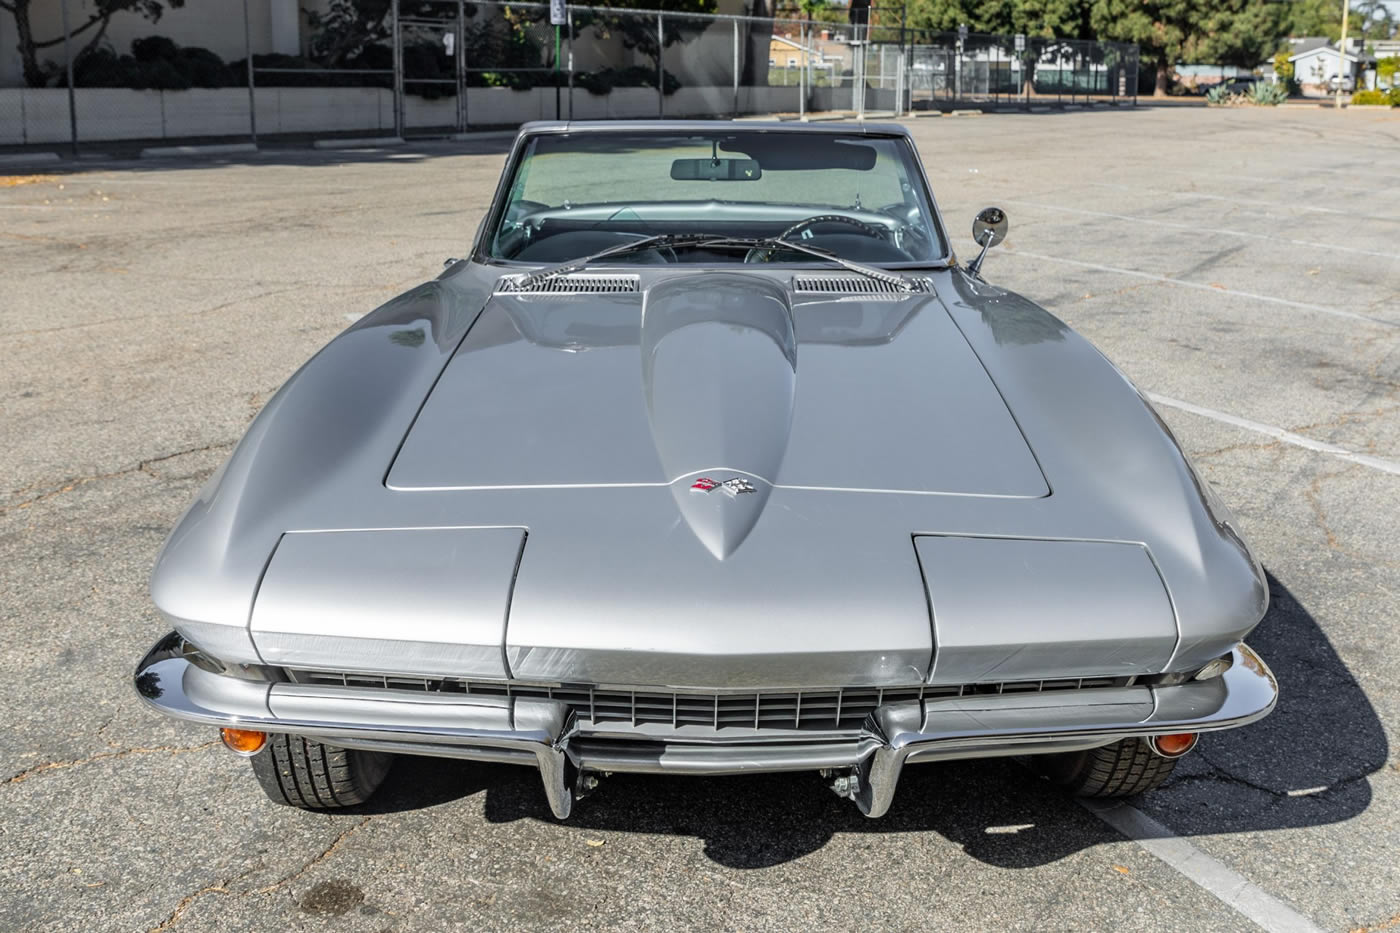 1967 Corvette Convertible in Silver Pearl